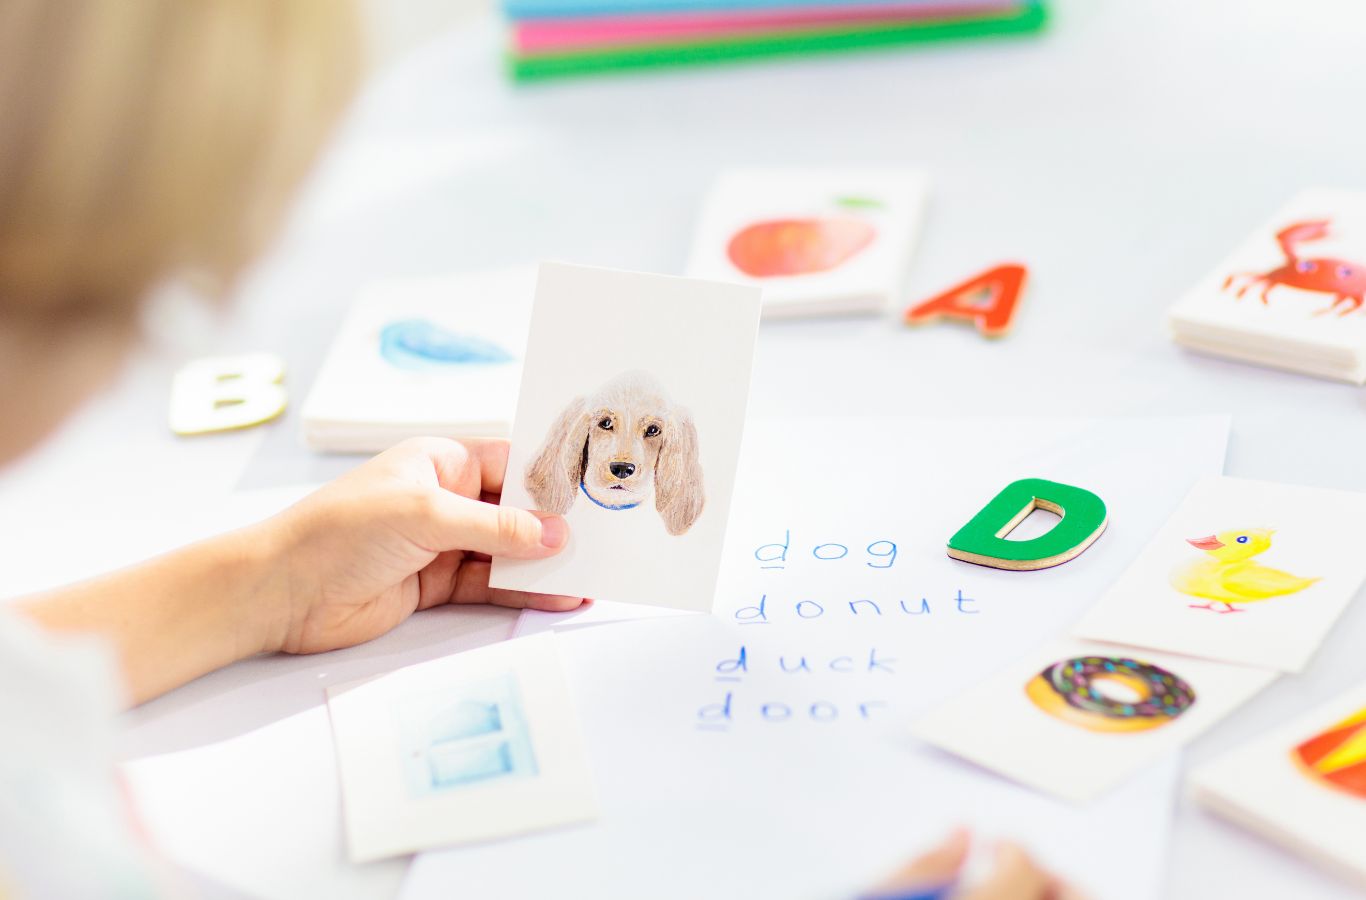 Học tiếng Anh qua flashcard (thẻ học) là một phương pháp học từ vựng phổ biến giúp hỗ trợ trẻ em ghi nhớ những gì được học một cách hiệu quả.